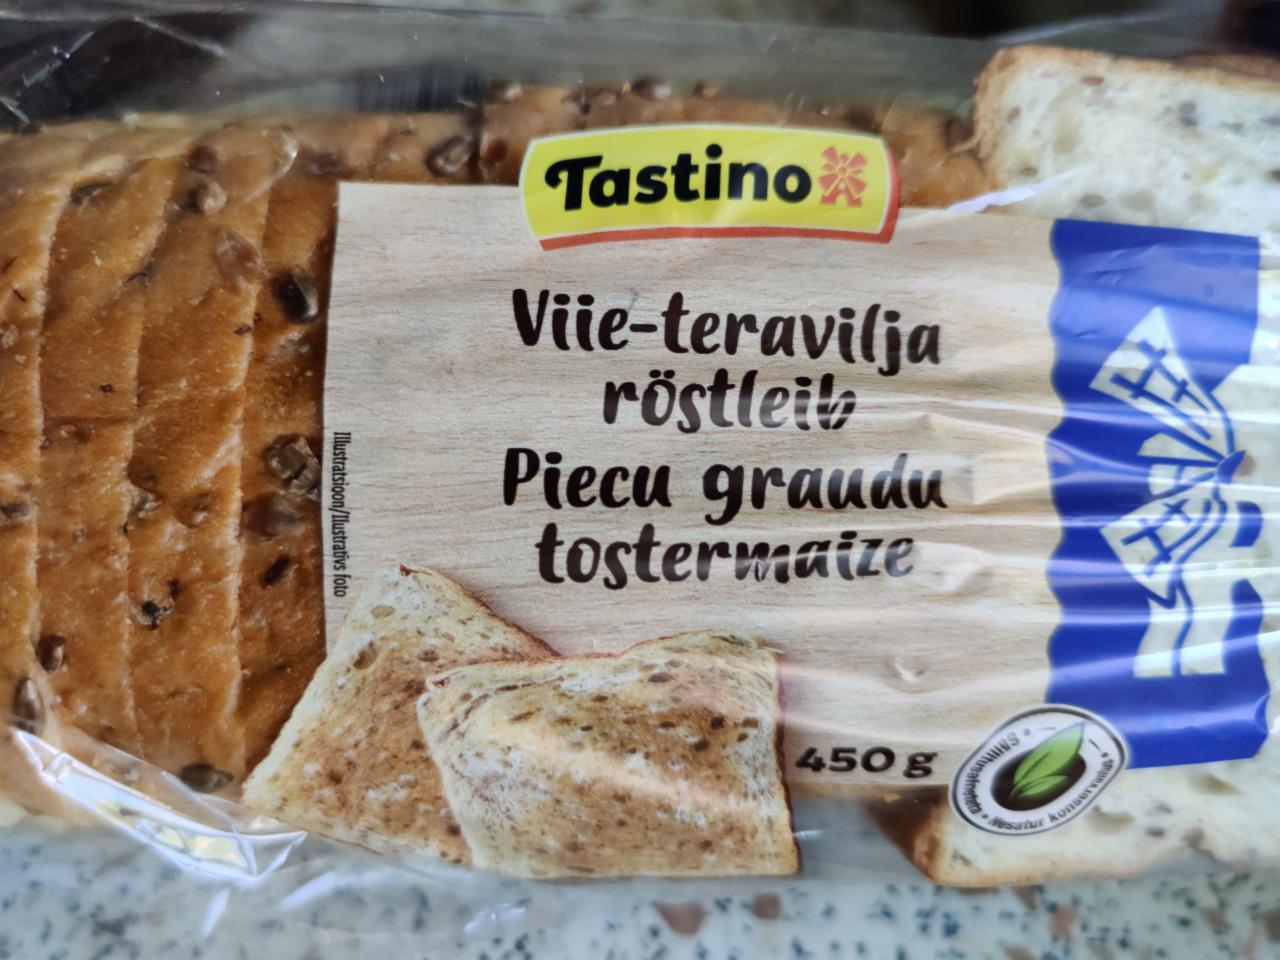 Фото - Viie-teravilja röstleit Piecu graunu tostermatze Tastino Lidl